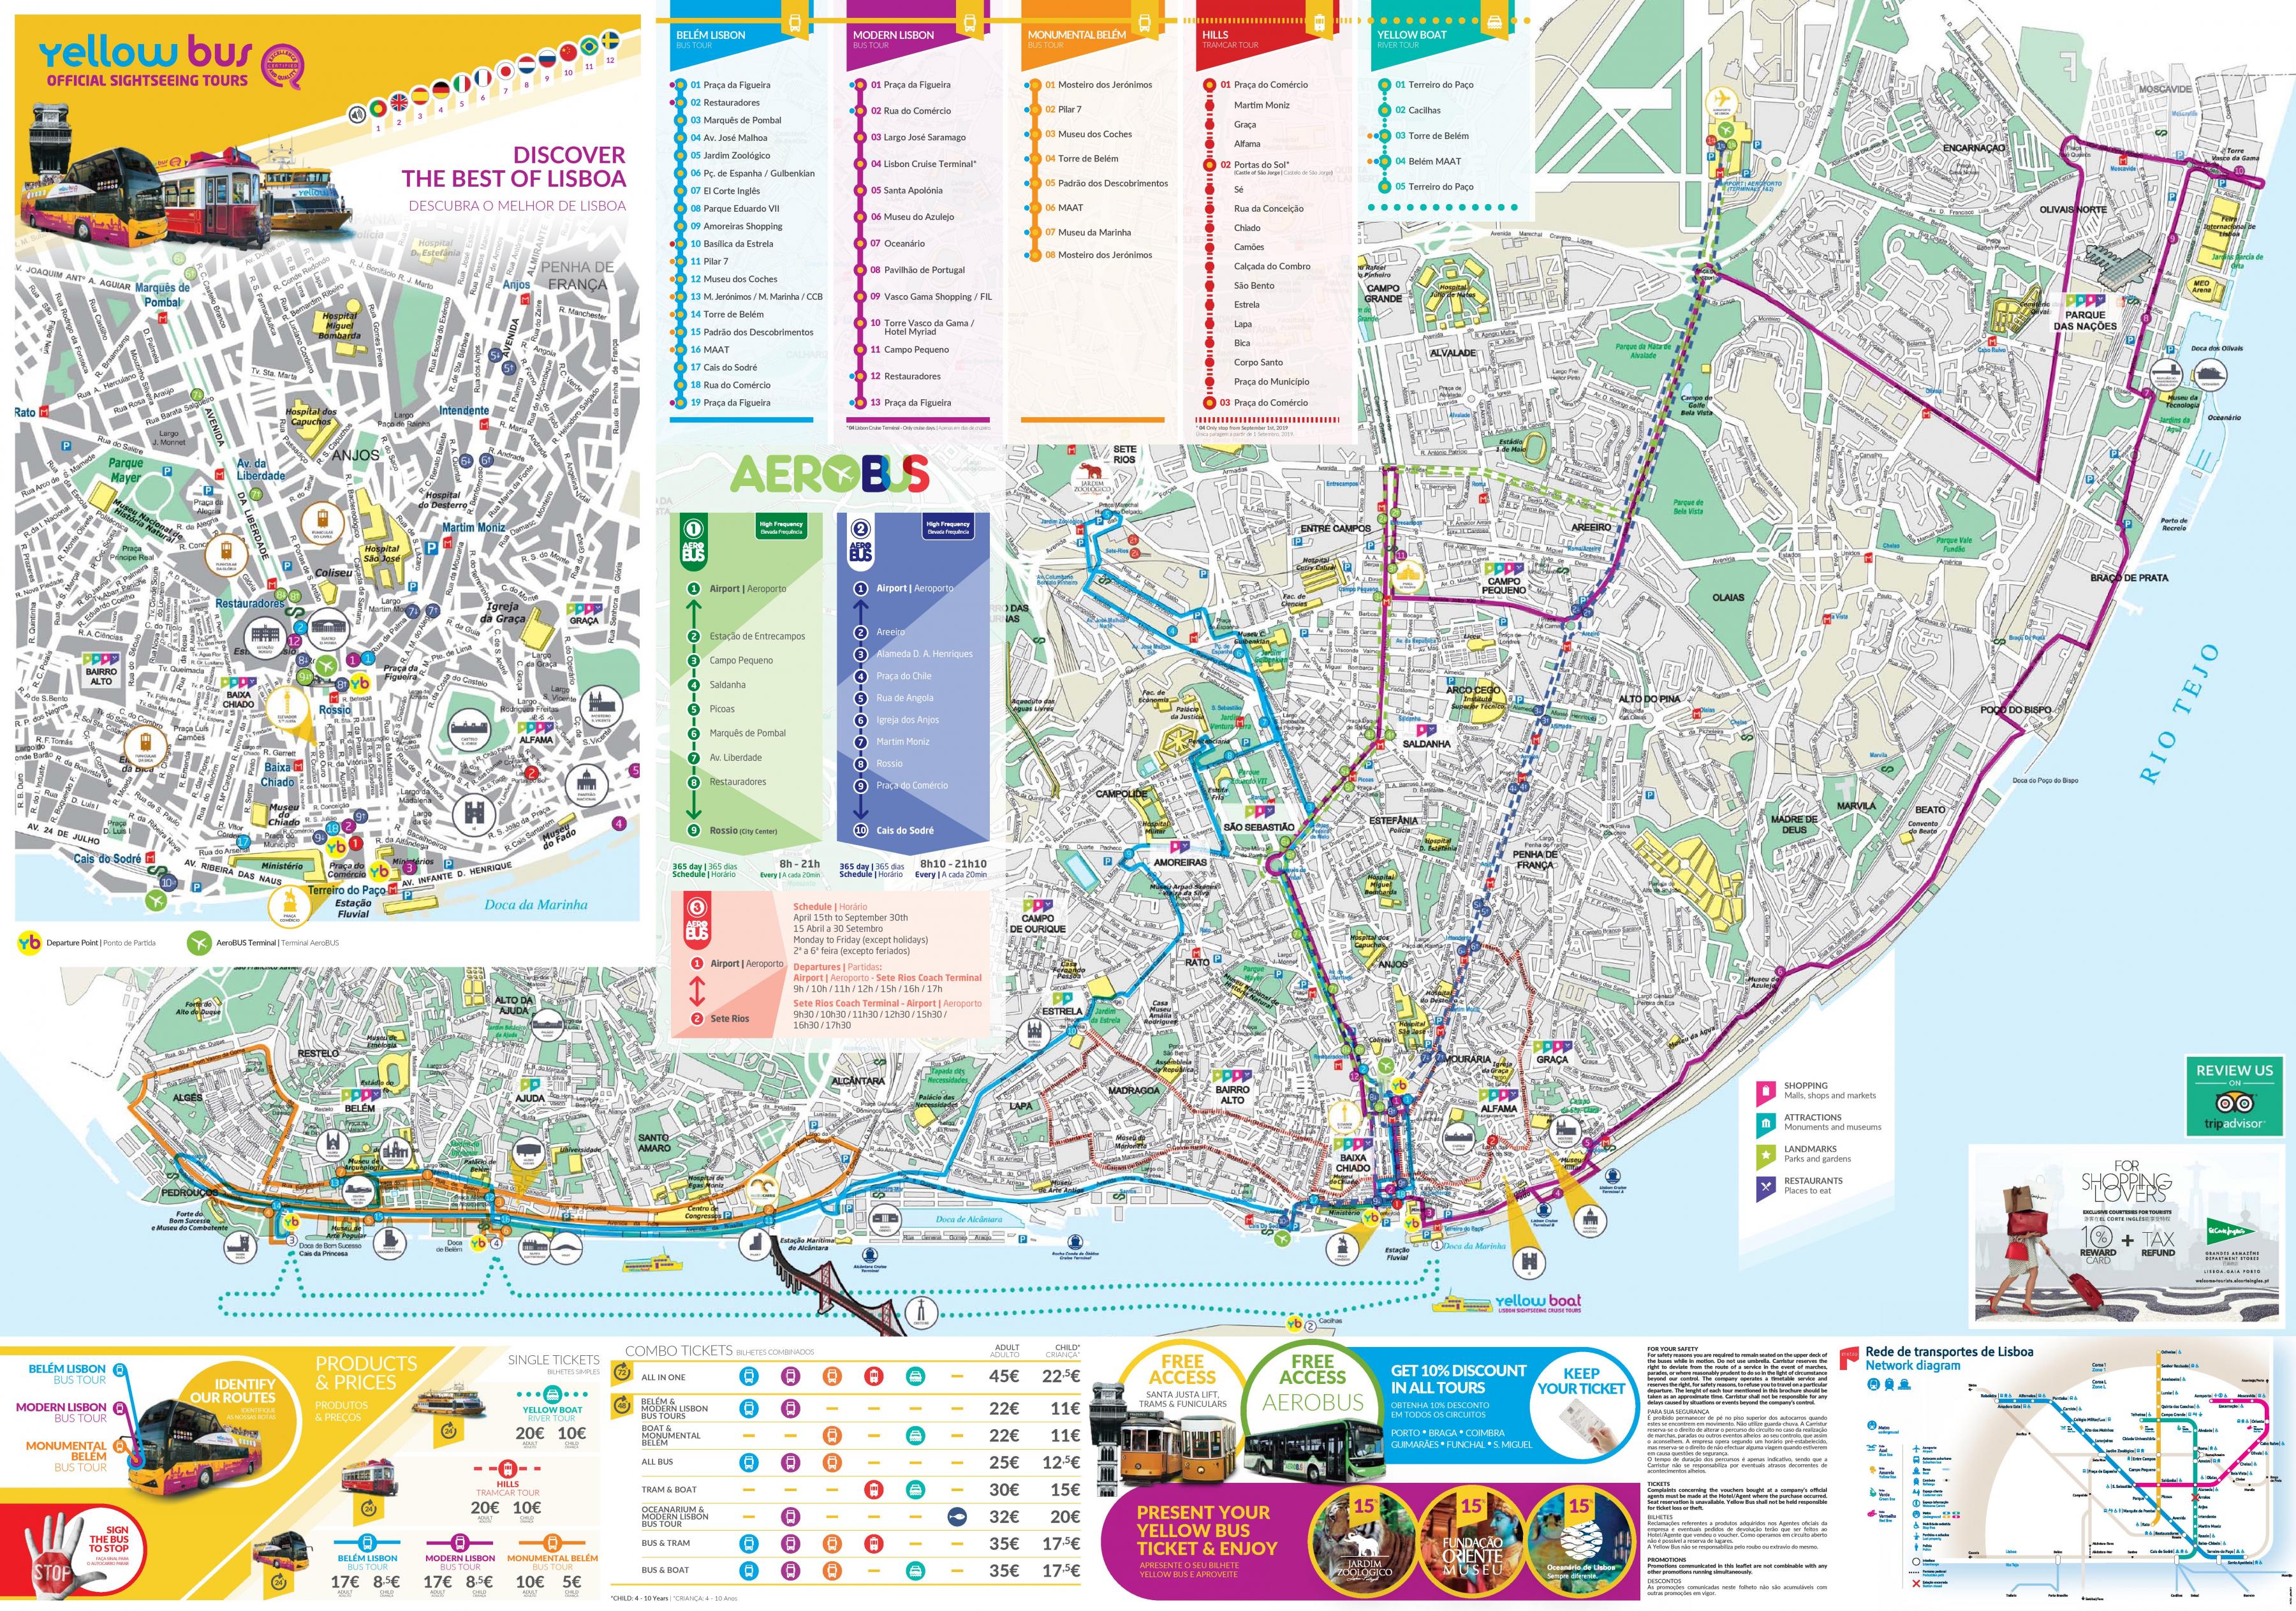 lisbon open top bus tour map